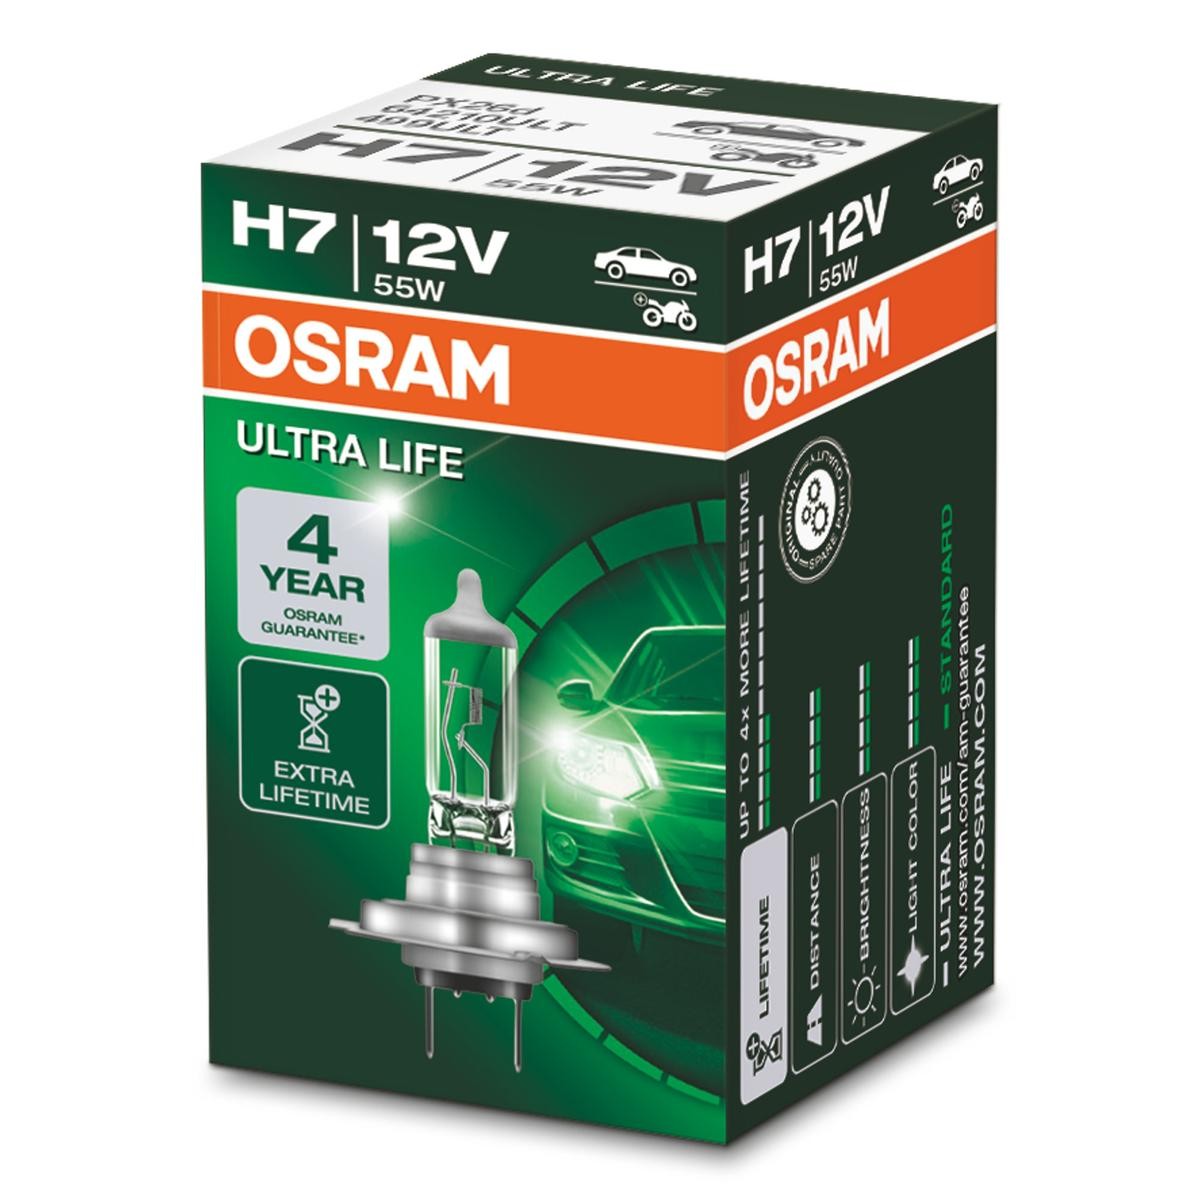 H7 OSRAM ULTRA LIFE H7 12V 55W PX26d 3200K Halogen Bulb, spotlight 64210ULT cheap